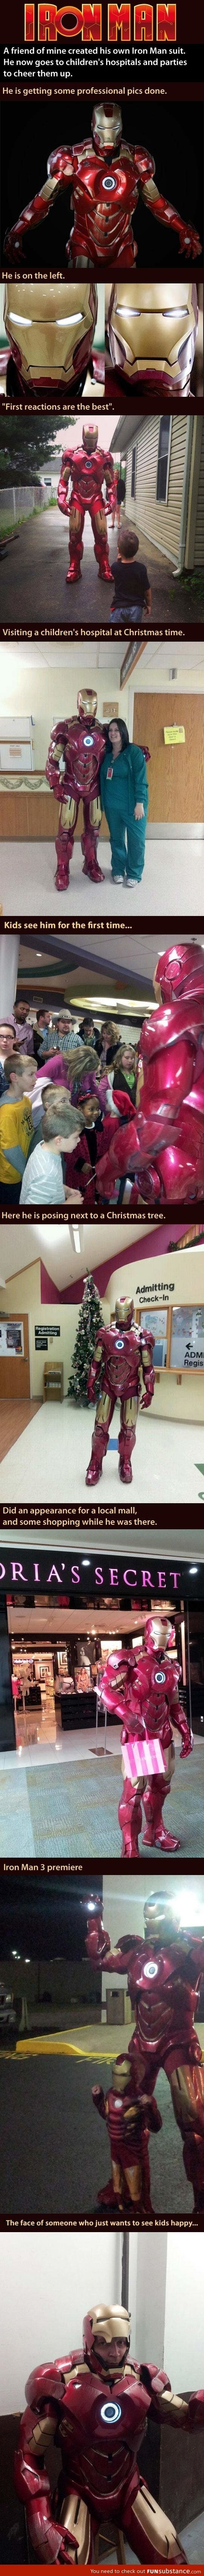 Real life Iron Man